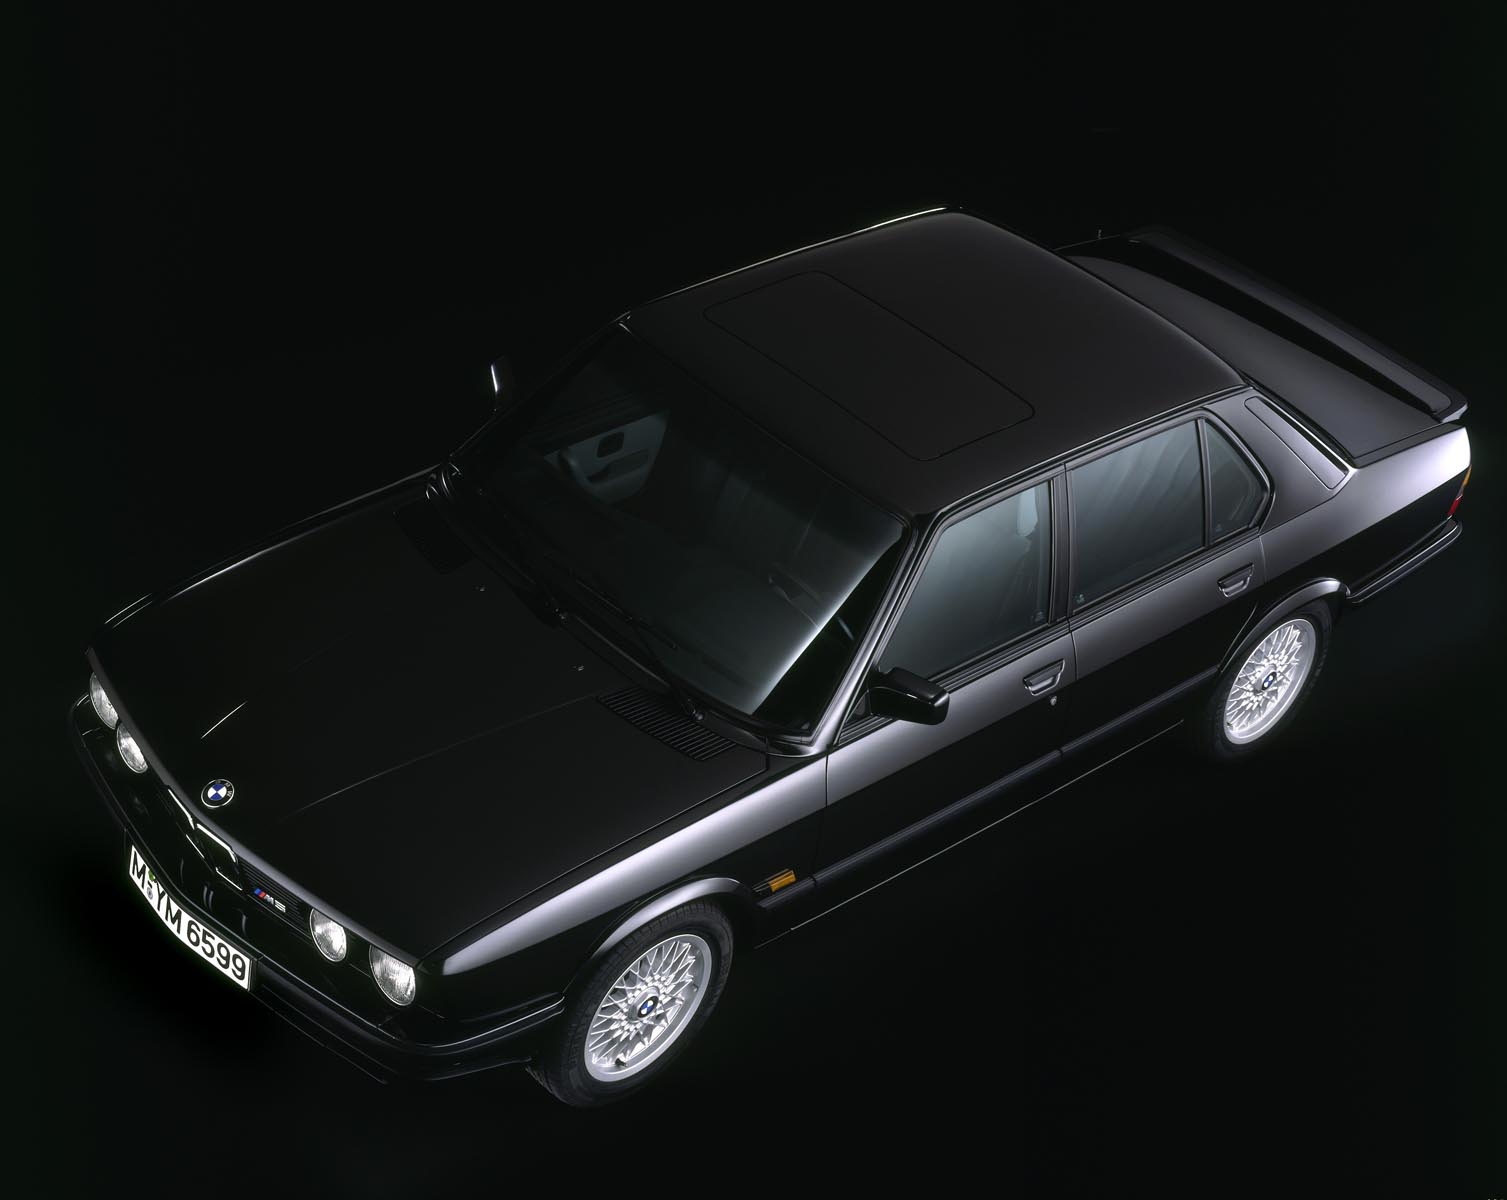 BMW Seria 5 E 28, produs intre 1981 si 1987, a fost vandut in peste 722.000 de exemplare